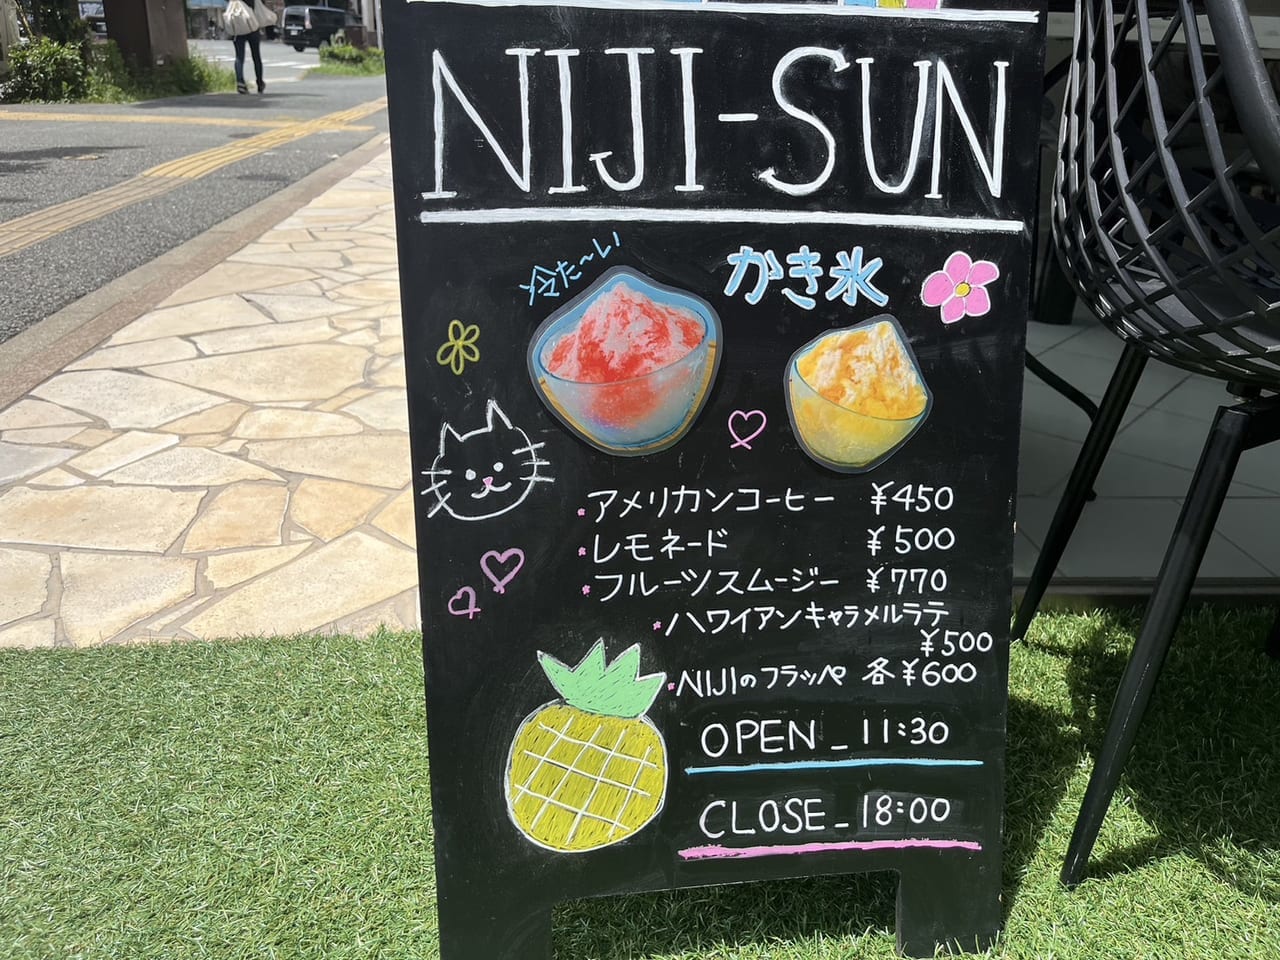 NIJI SUN with pet cafe 平尾店